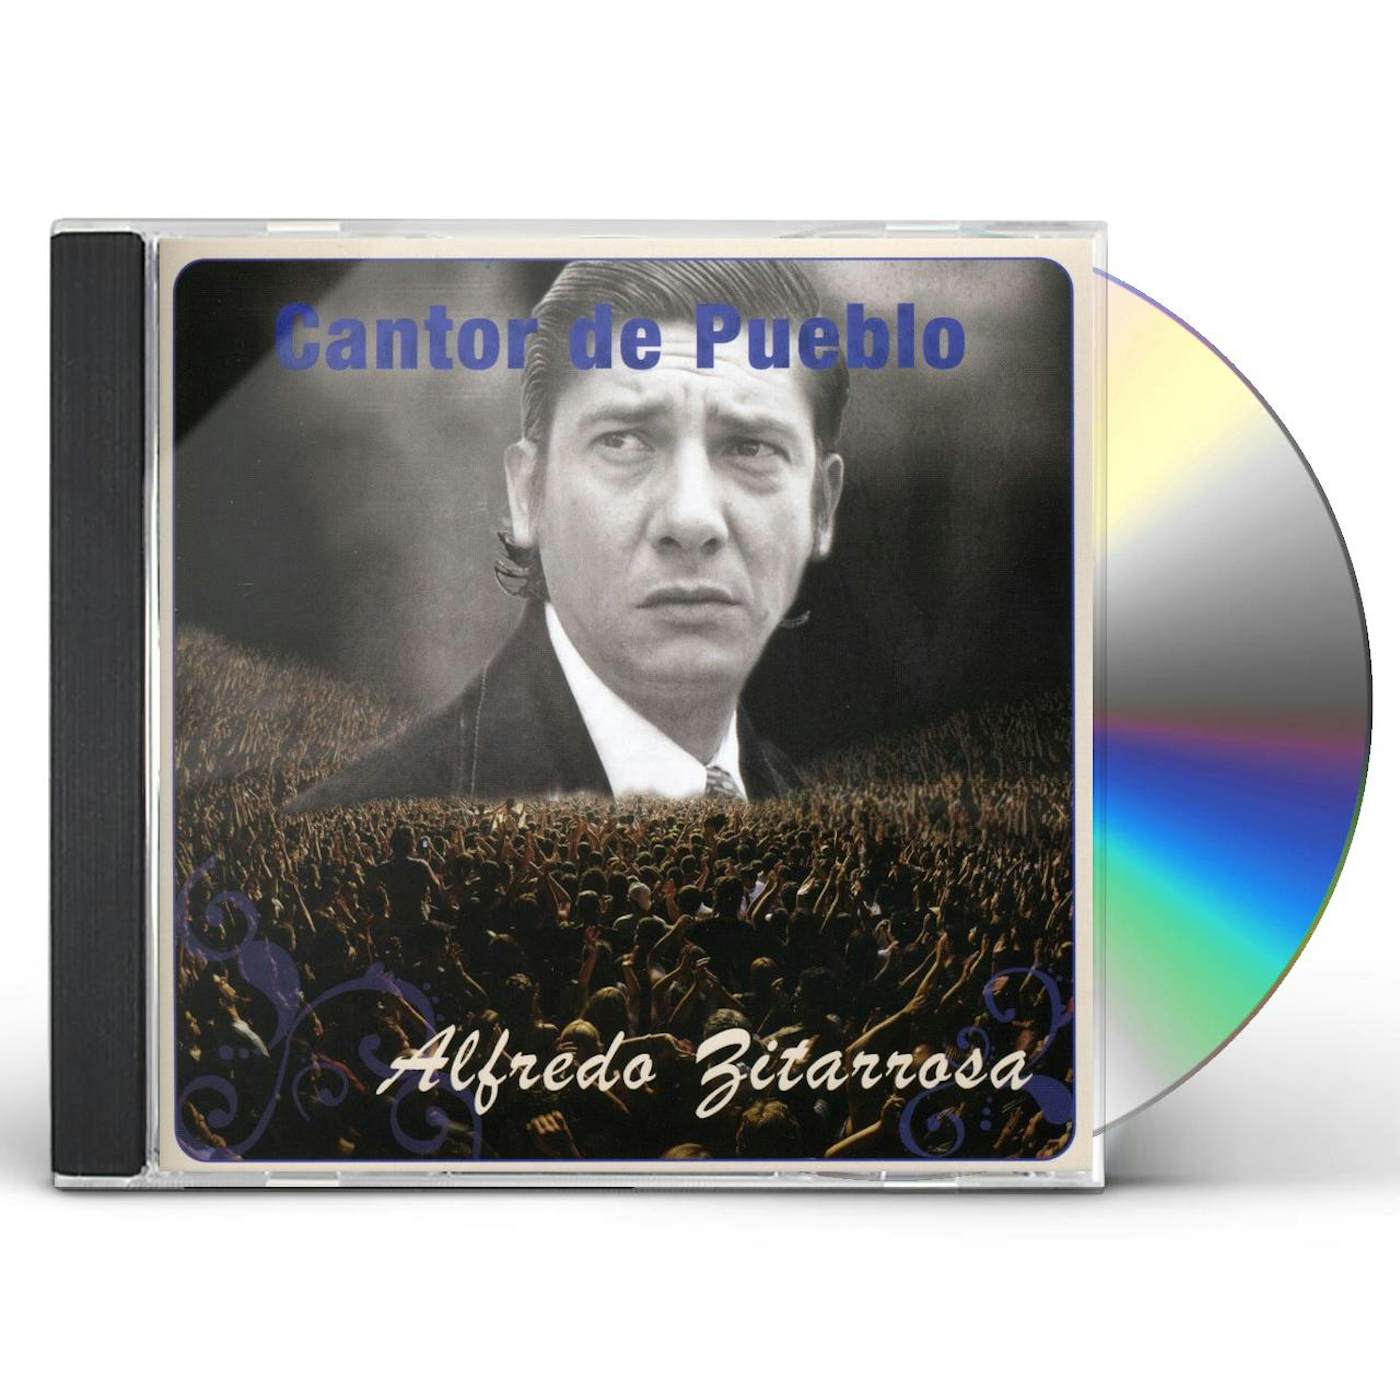 Alfredo Zitarrosa CANTOR DEL PUEBLO CD